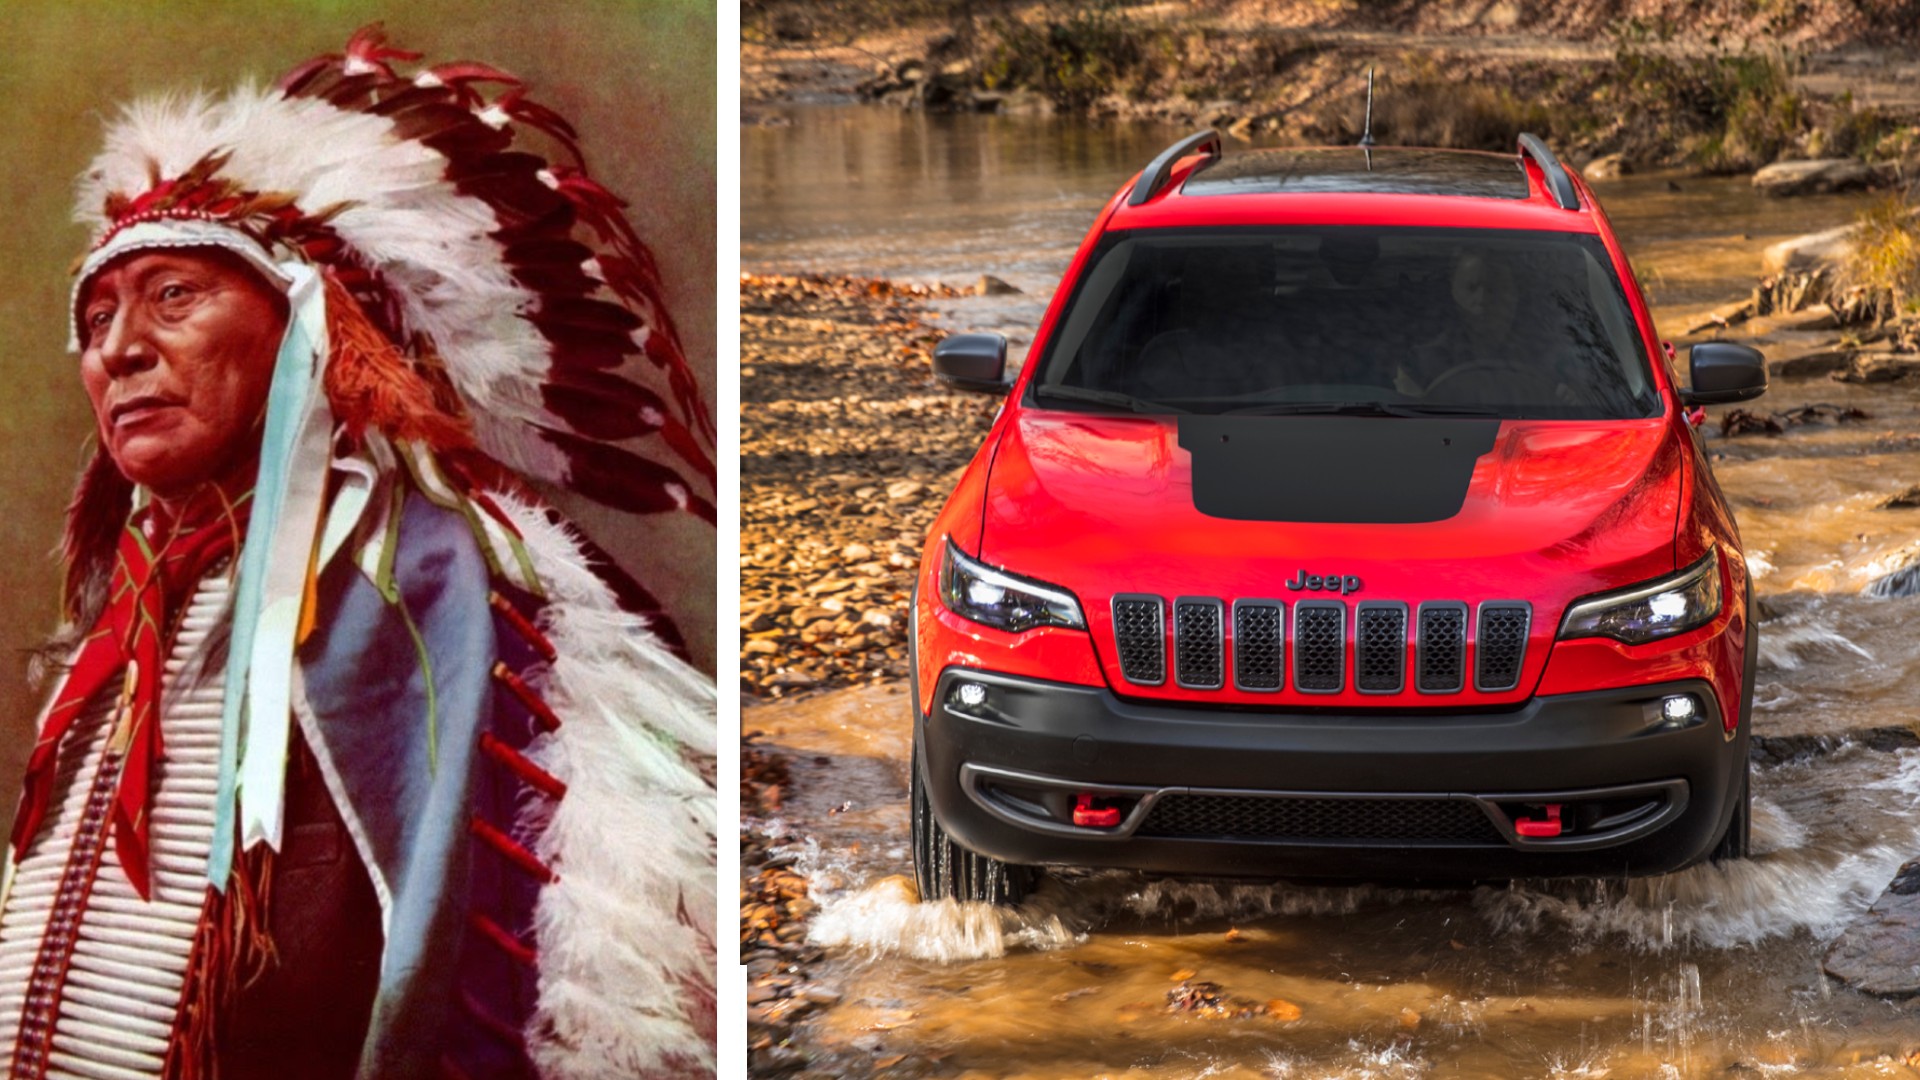 Οι ινδιάνοι ζητούν από την Jeep να αλλάξει το όνομα του Cherokee